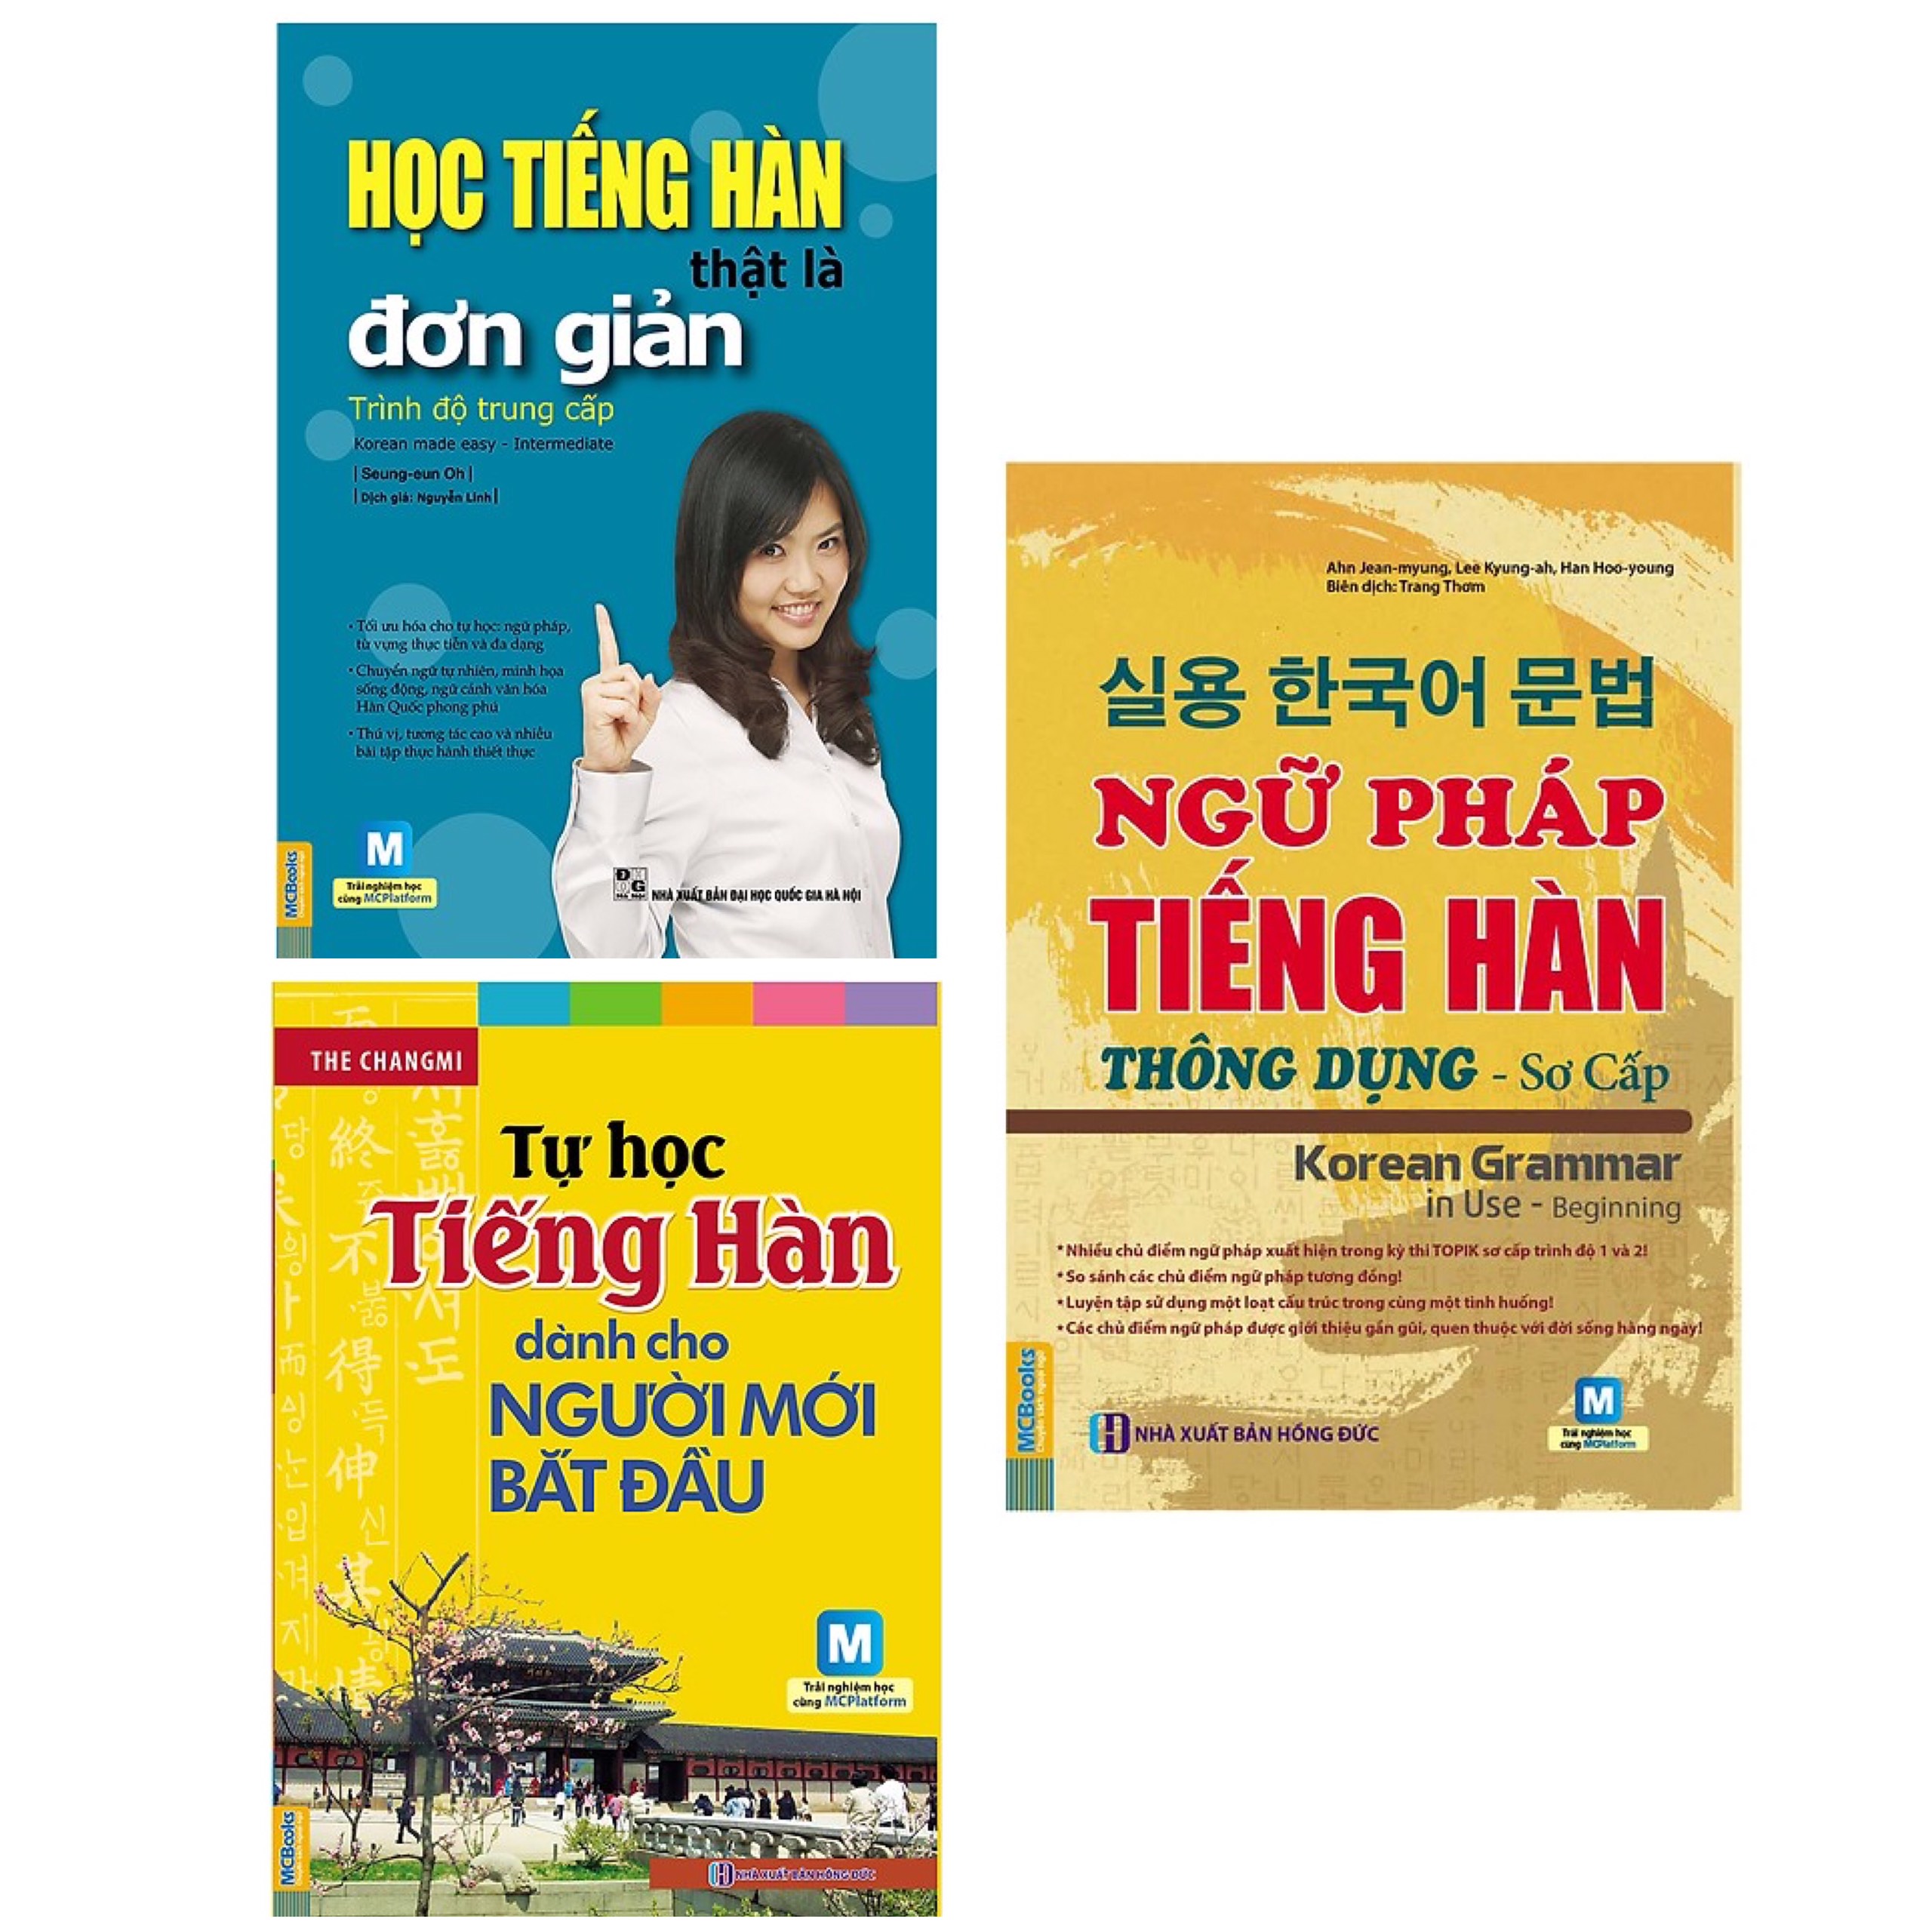 Combo 3 Cuốn Sách Tự Học Tiếng Hàn : Học Tiếng Hàn Thật Là Đơn Giản - Trình Độ Trung Cấp + Tự Học Tiếng Hàn Dành Cho Người Mới Bắt Đầu (Kèm CD Hoặc Tải App) - Tái Bản + Ngữ Pháp Tiếng Hàn Thông Dụng - Sơ Cấp (Dùng APP MCBooks) (Tặng kèm Bookmark thiết kế